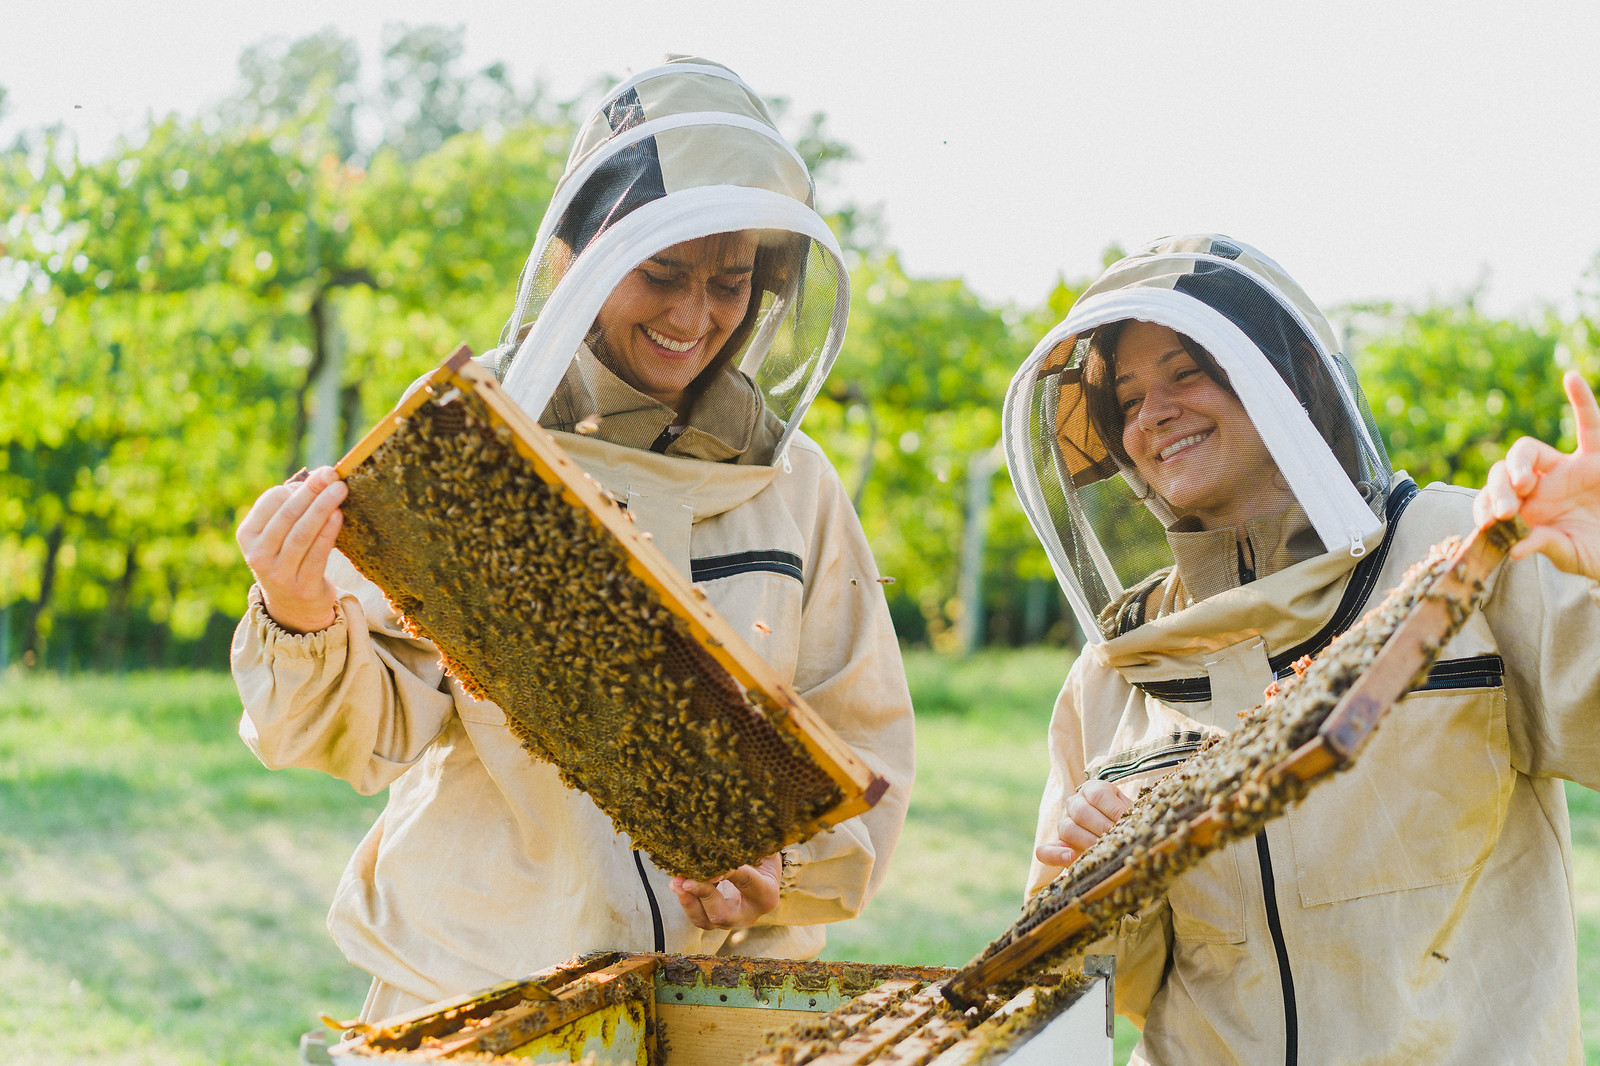 Nel cuore dell’Emilia, un viaggio alla scoperta delle api e del miele